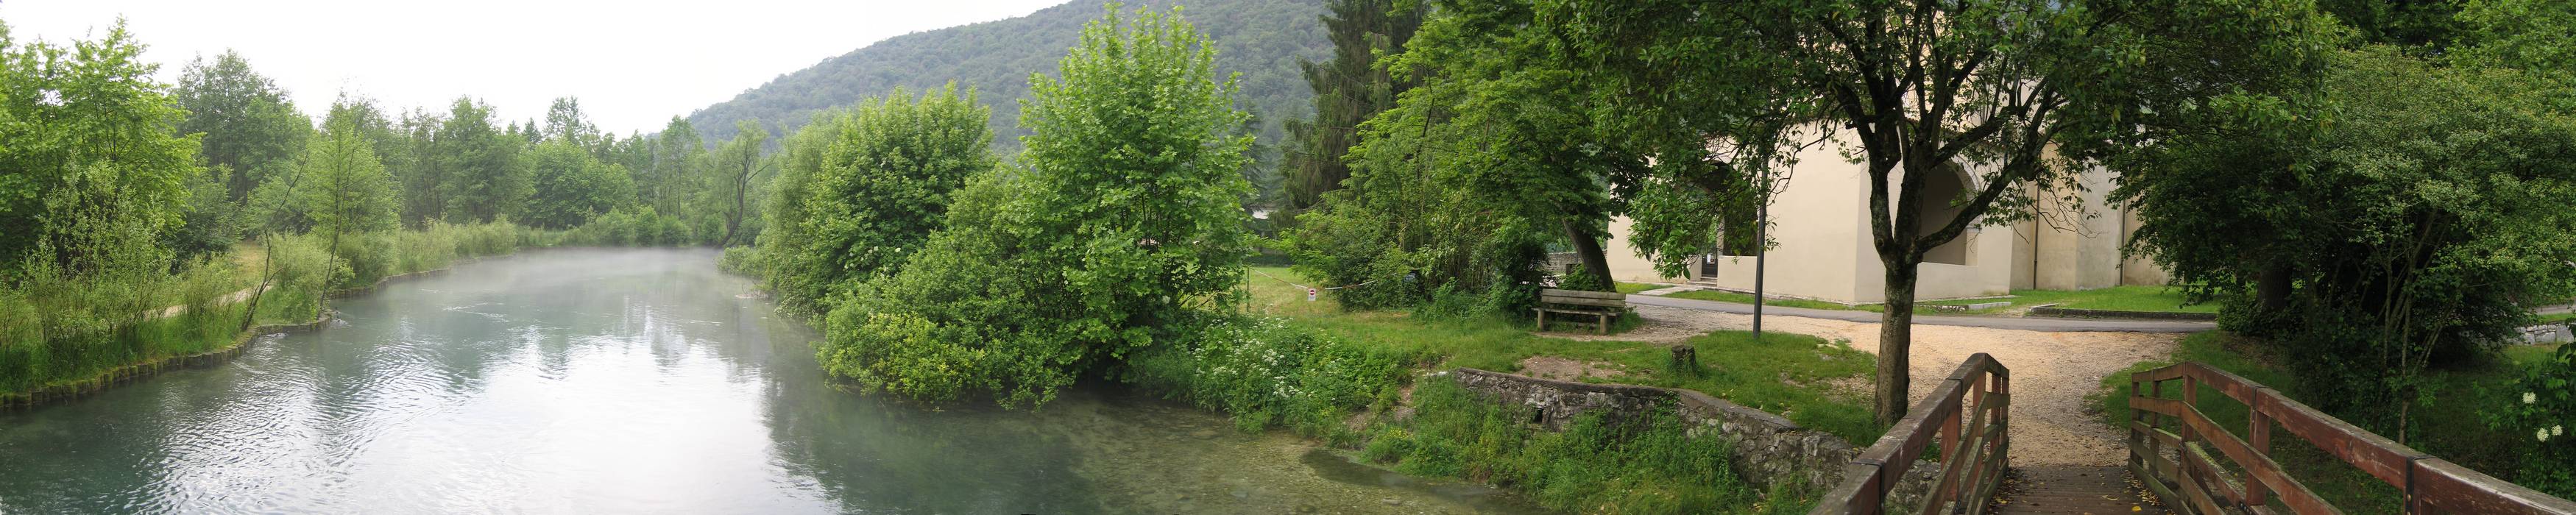 risorgive del fiume Livenza, Polcenigo, Friuli Venezia Giulia